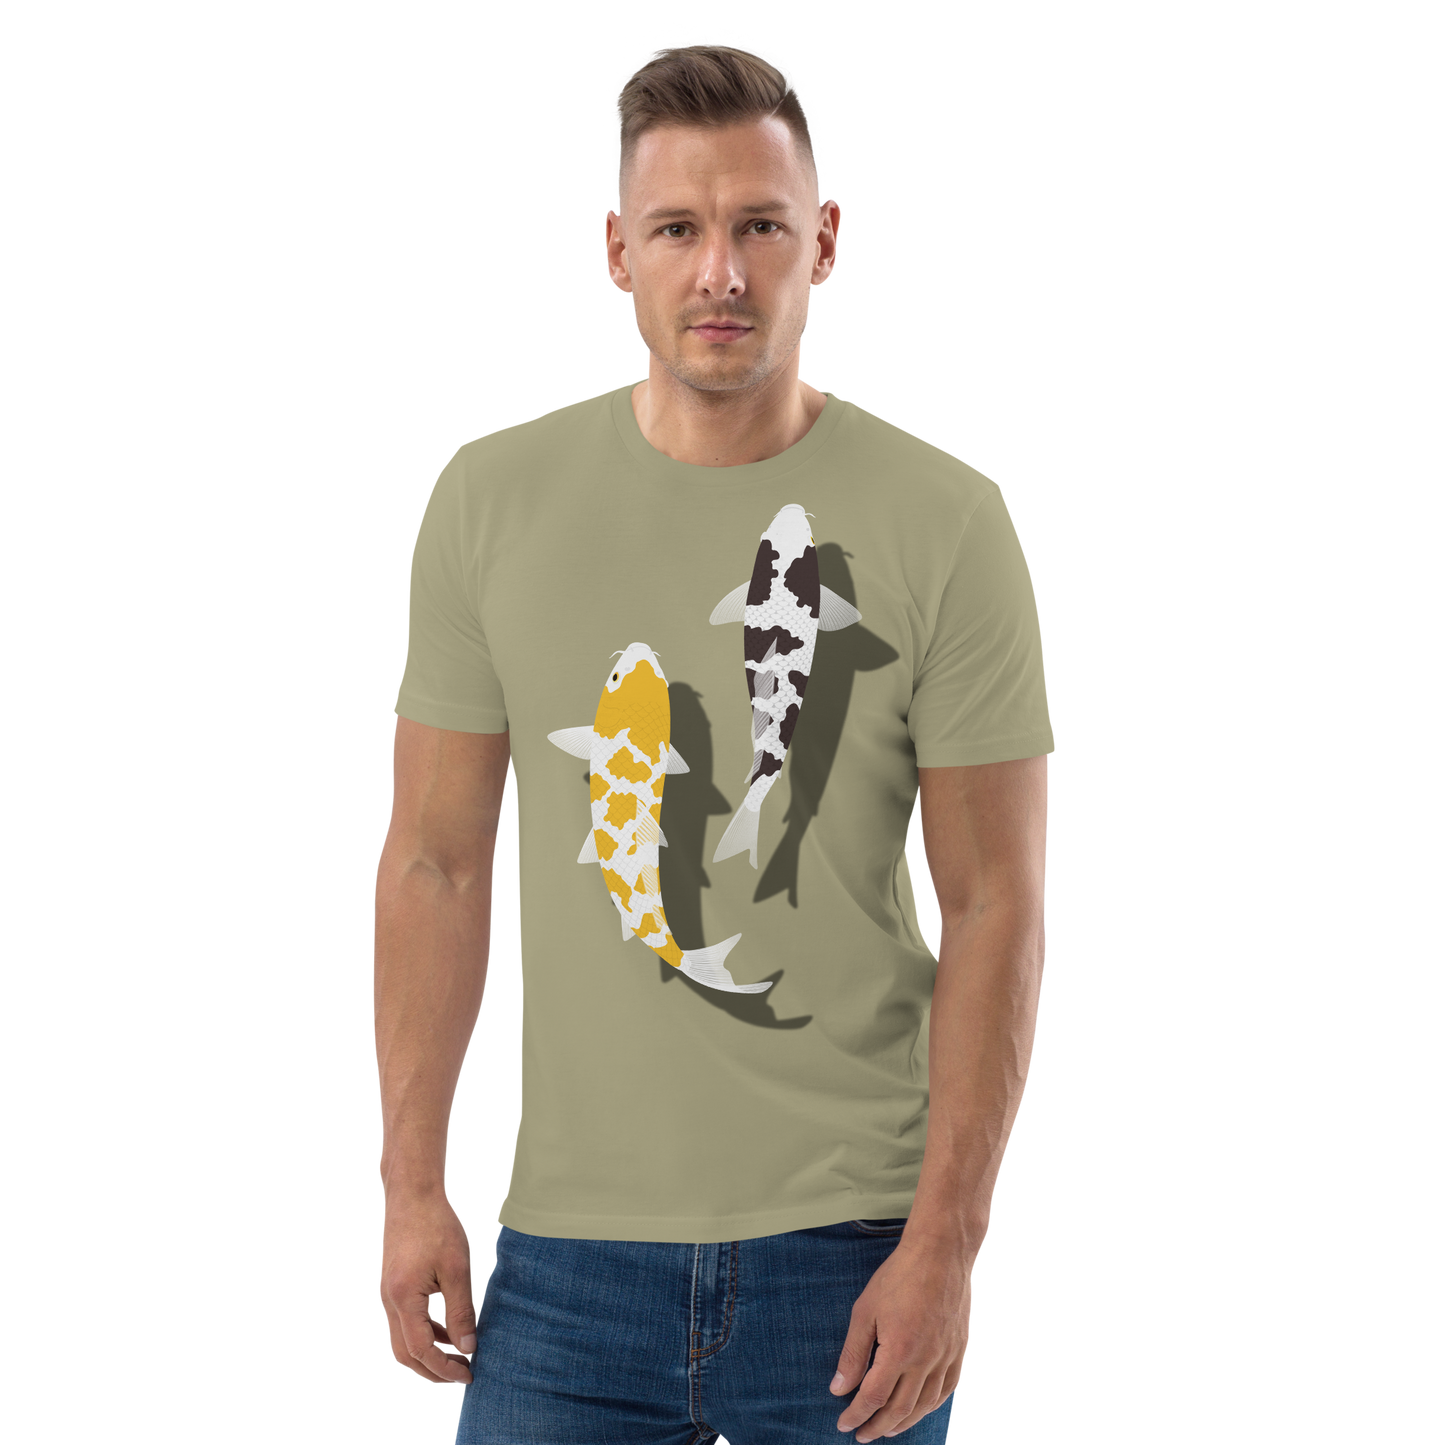 [Karper] T-shirt witte schildpad, Duitse spanning (unisex)